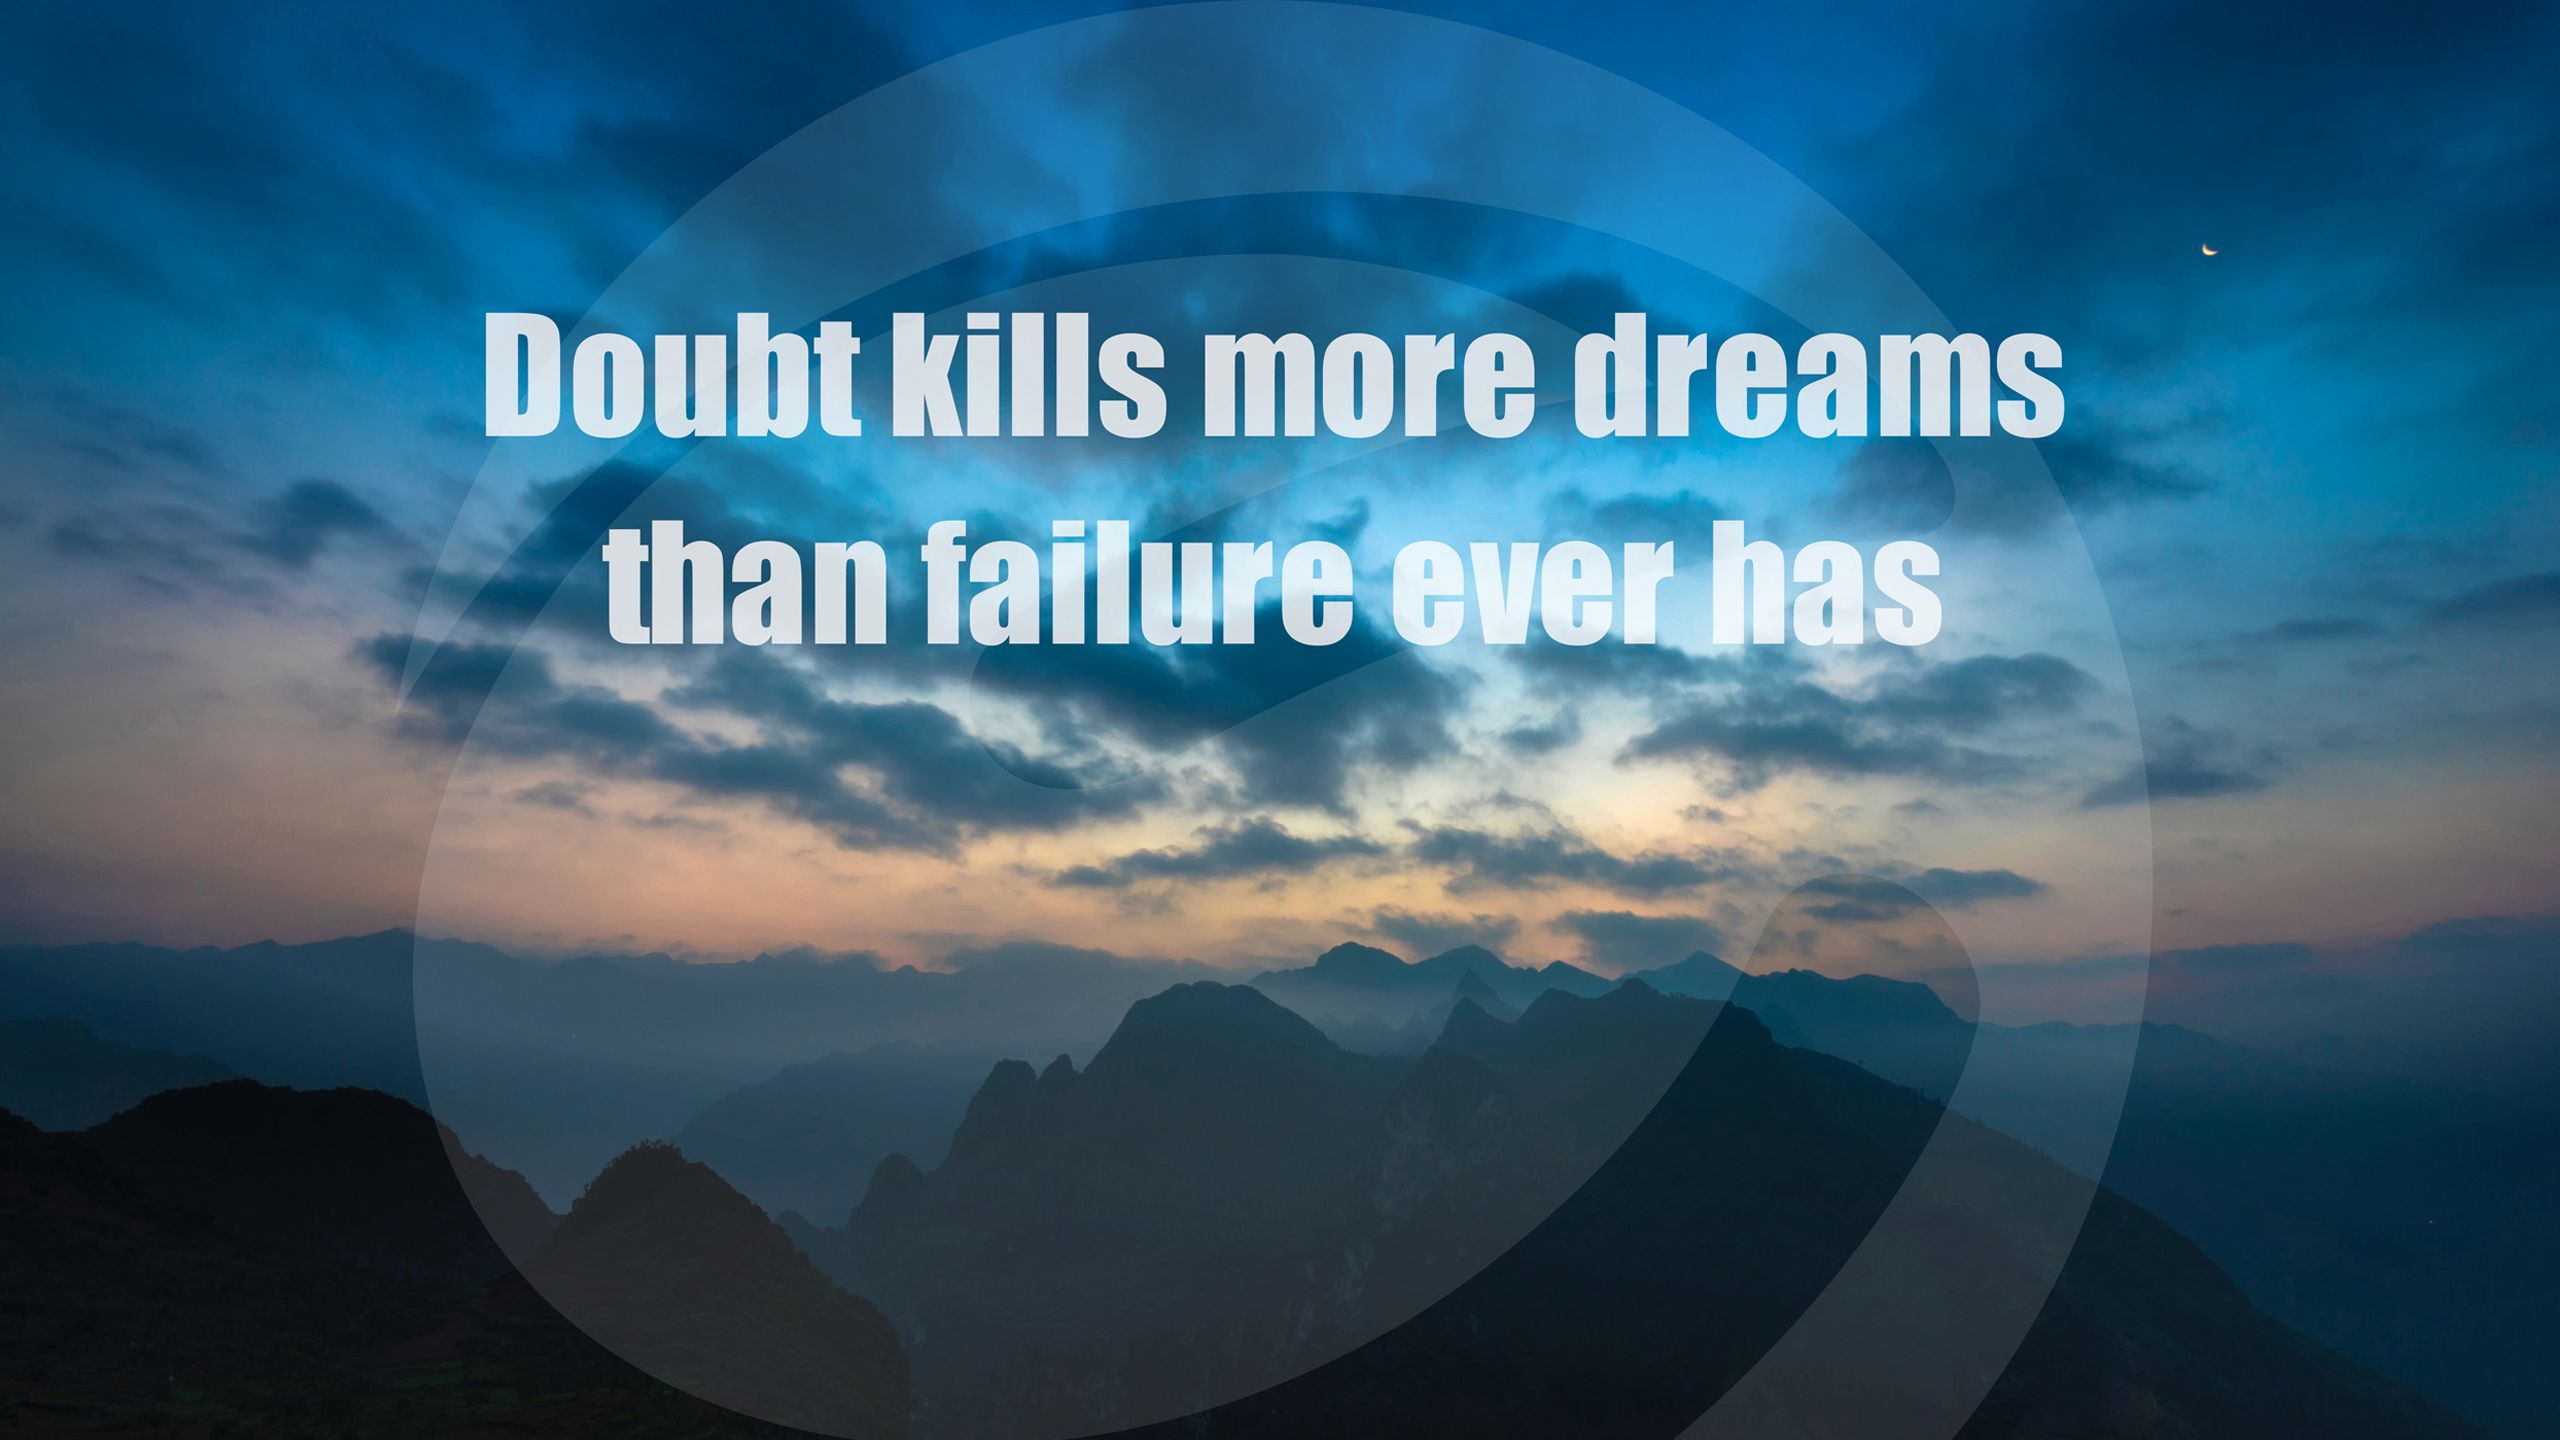 Wallpaper 4k Doubt Kills Dreams Failure Quote Compared, Doubt, Dreams, Failure, Kills, Quote